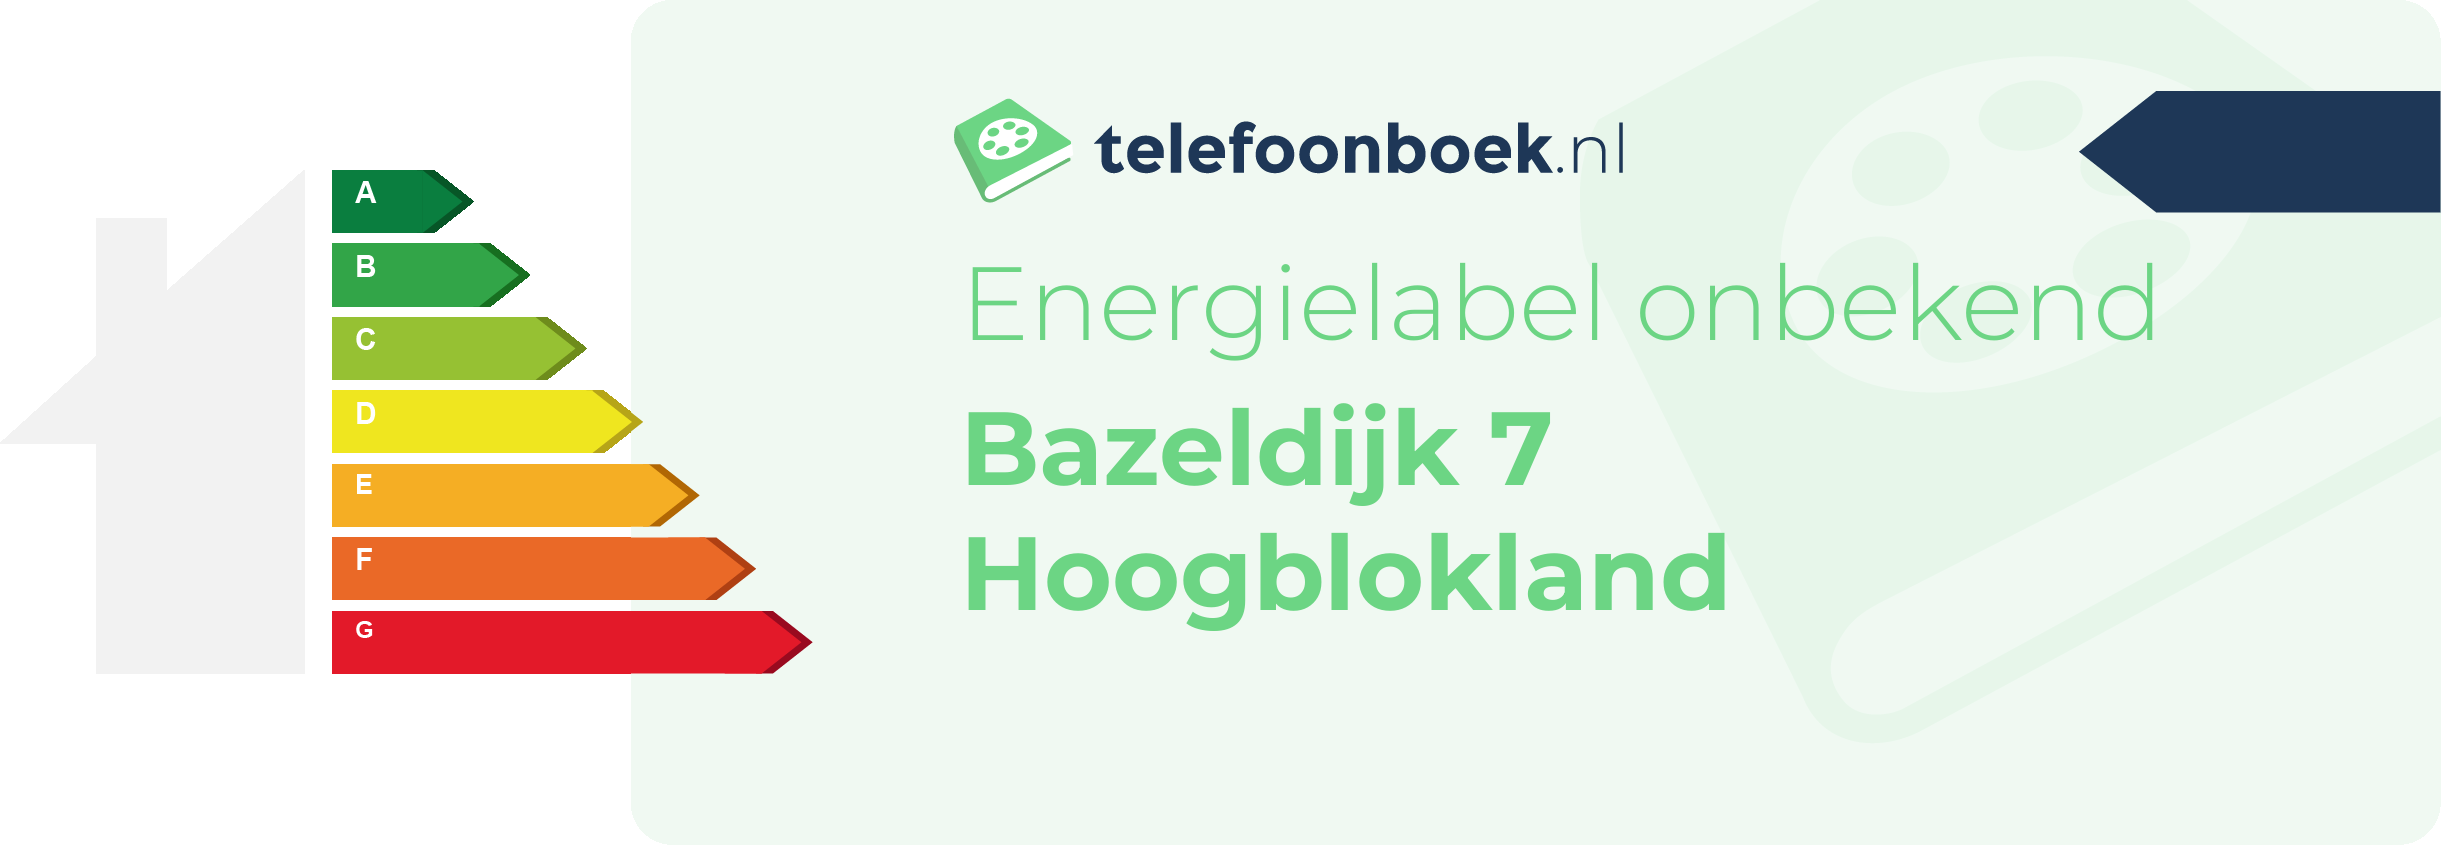 Energielabel Bazeldijk 7 Hoogblokland